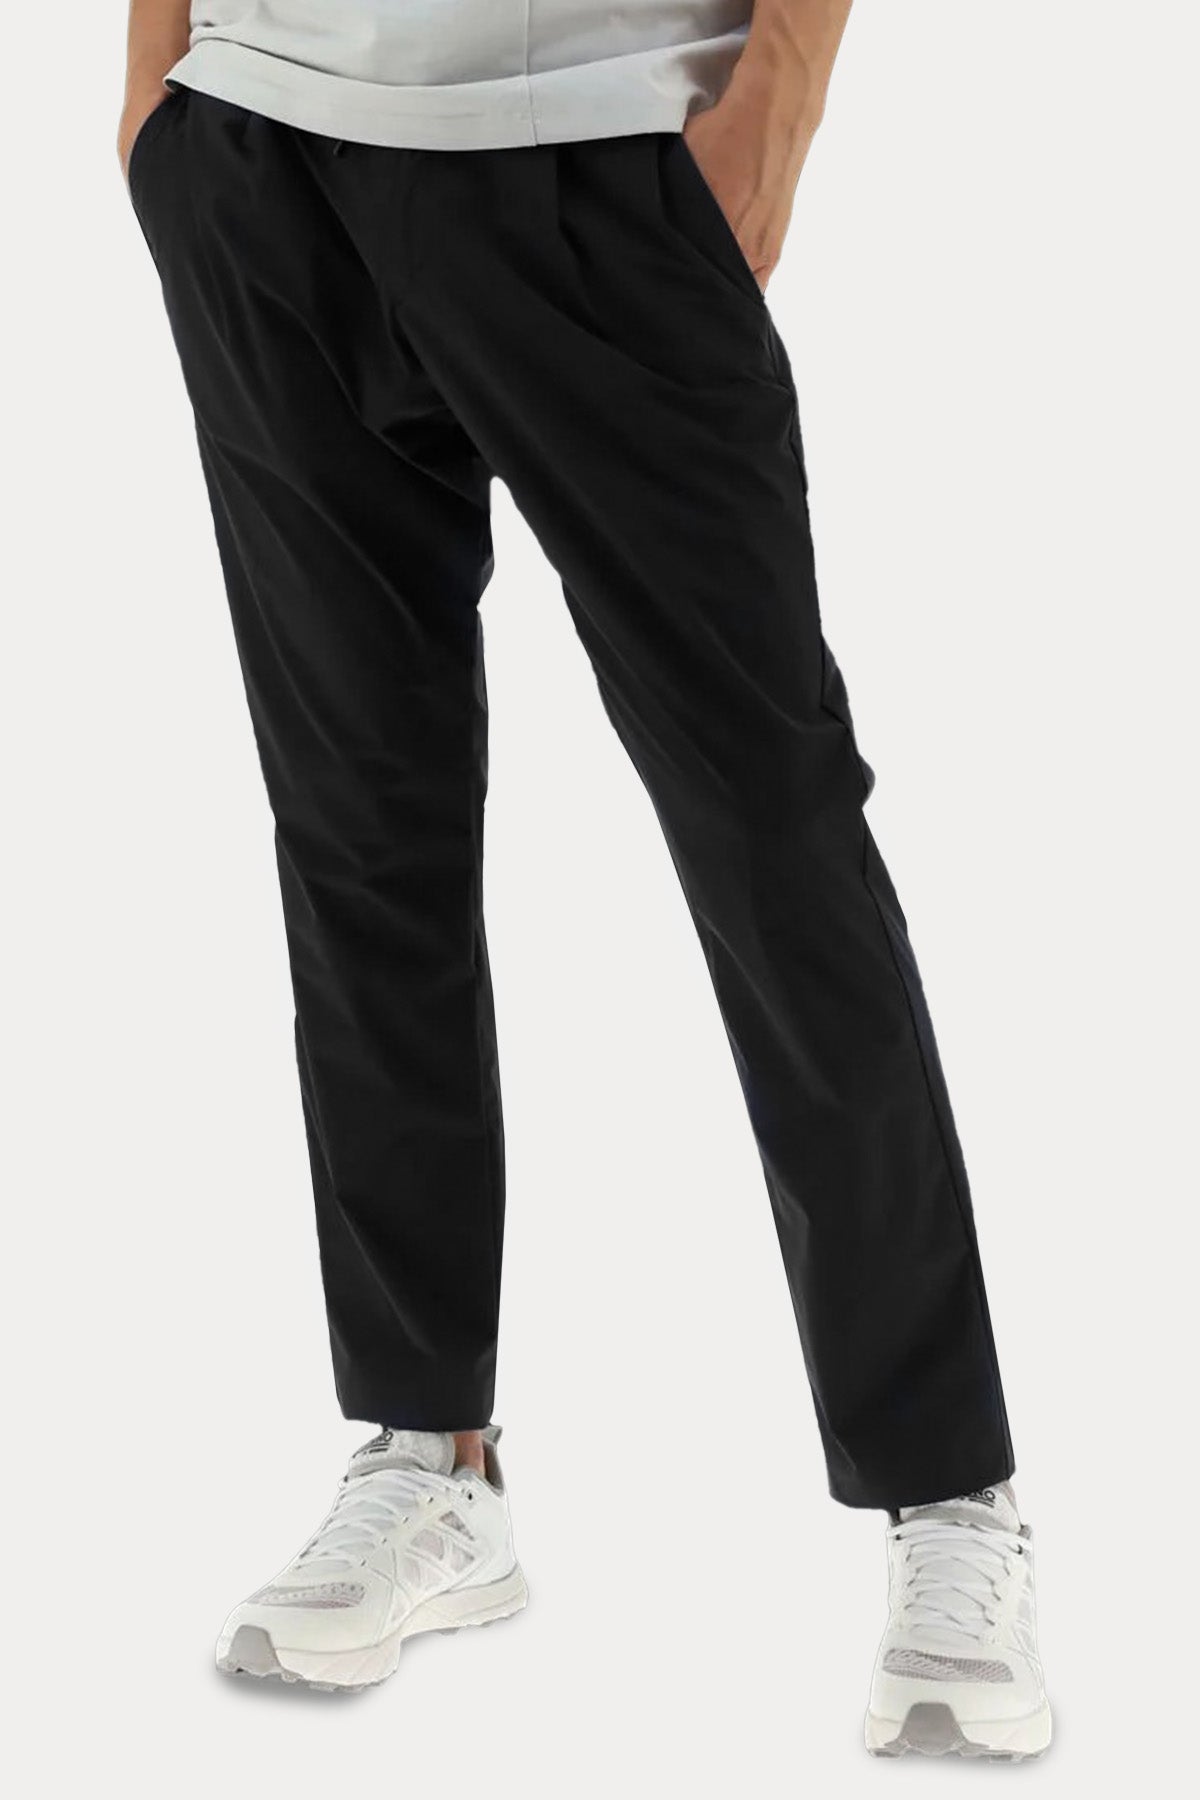 Herno Laminar Beli Lastikli Streç Pantolon-Libas Trendy Fashion Store